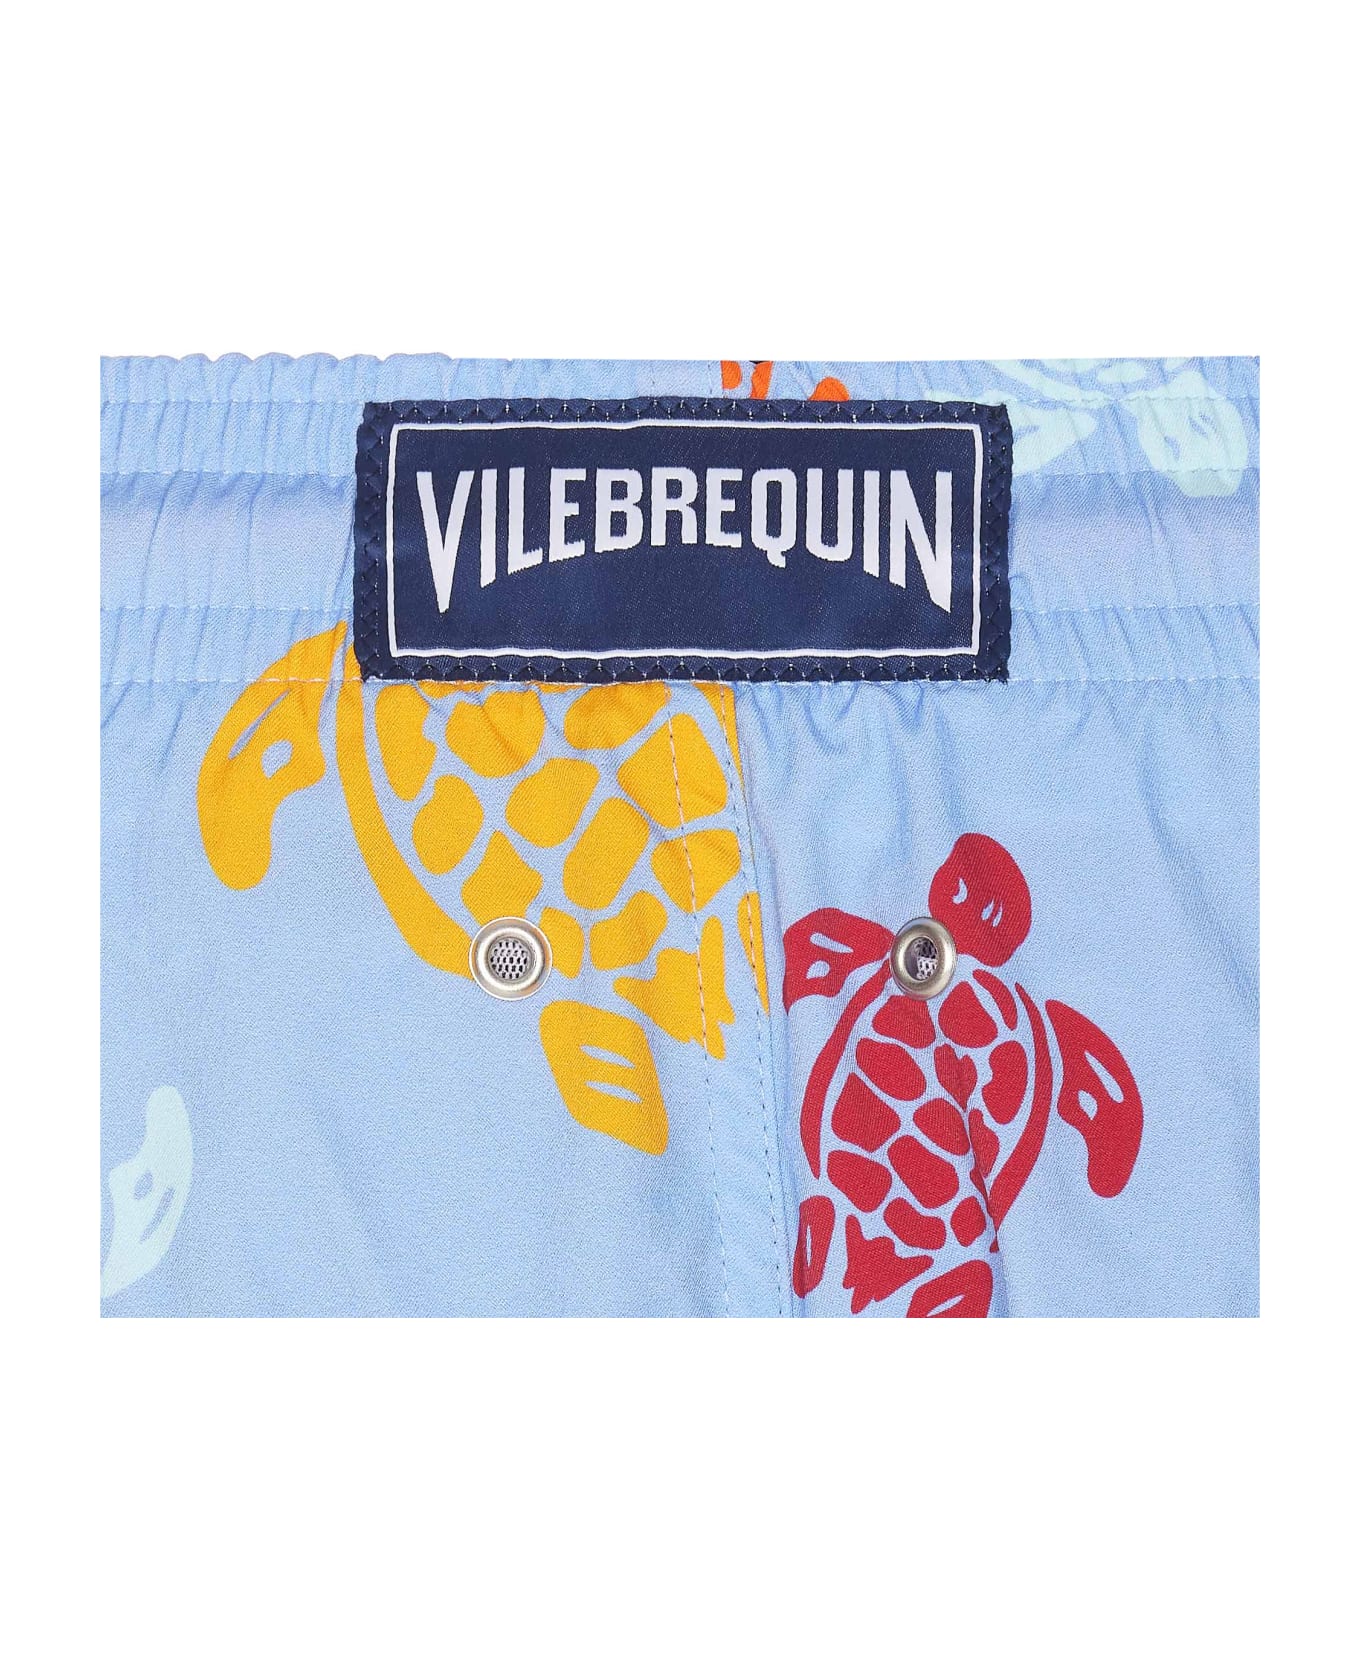 Vilebrequin Tortues Multicolores Swimwear - MultiColour